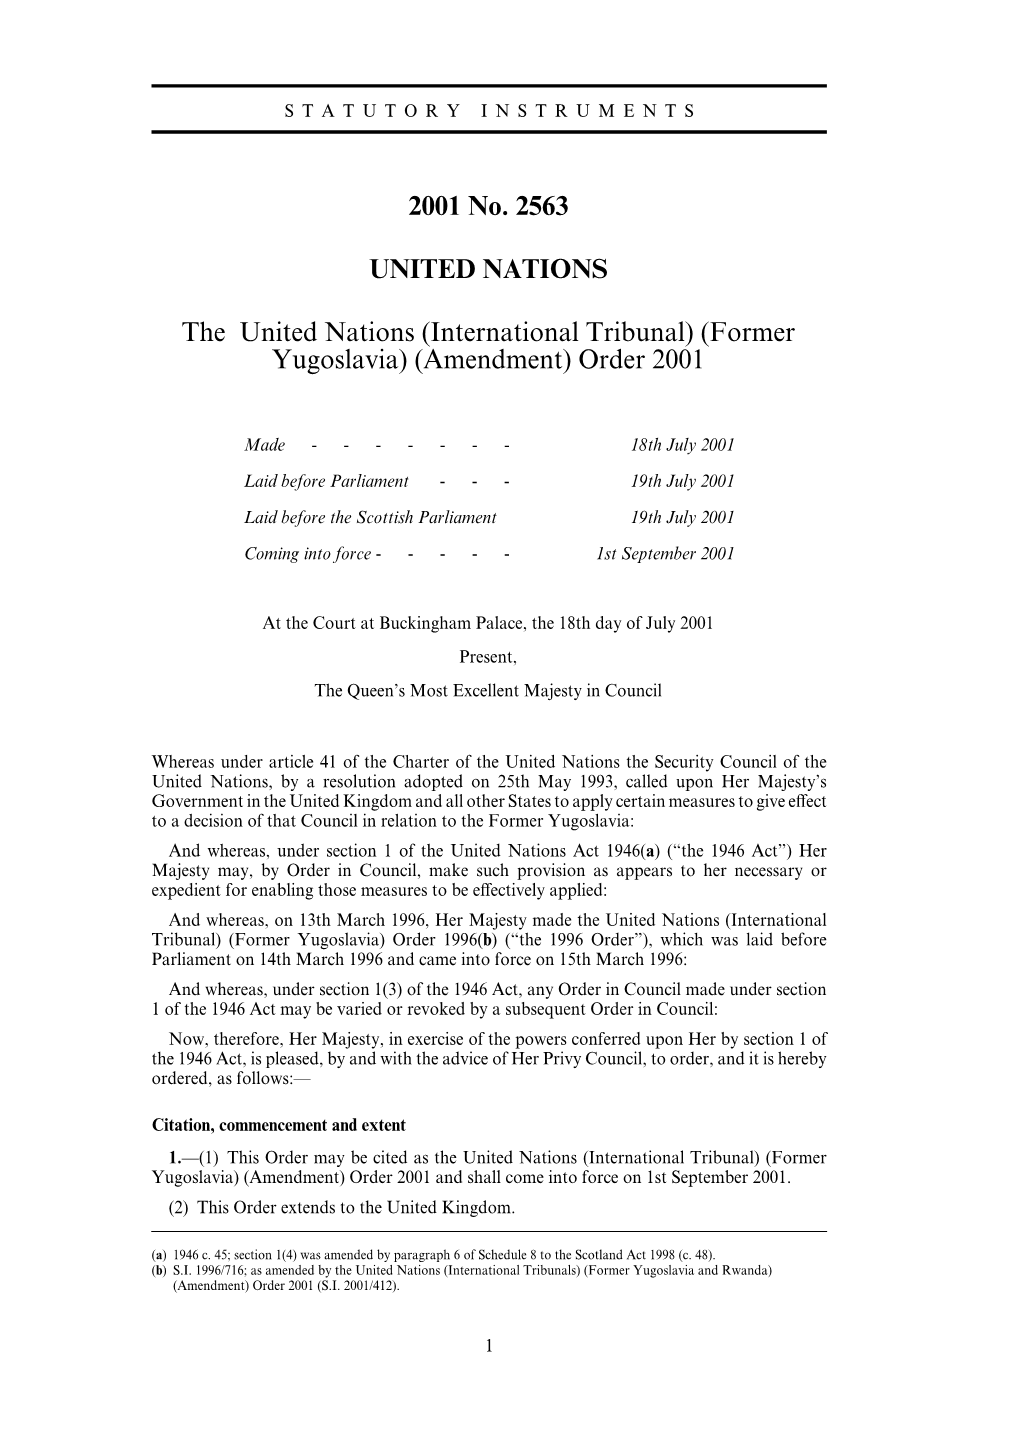 International Tribunal) (Former Yugoslavia) (Amendment) Order 2001